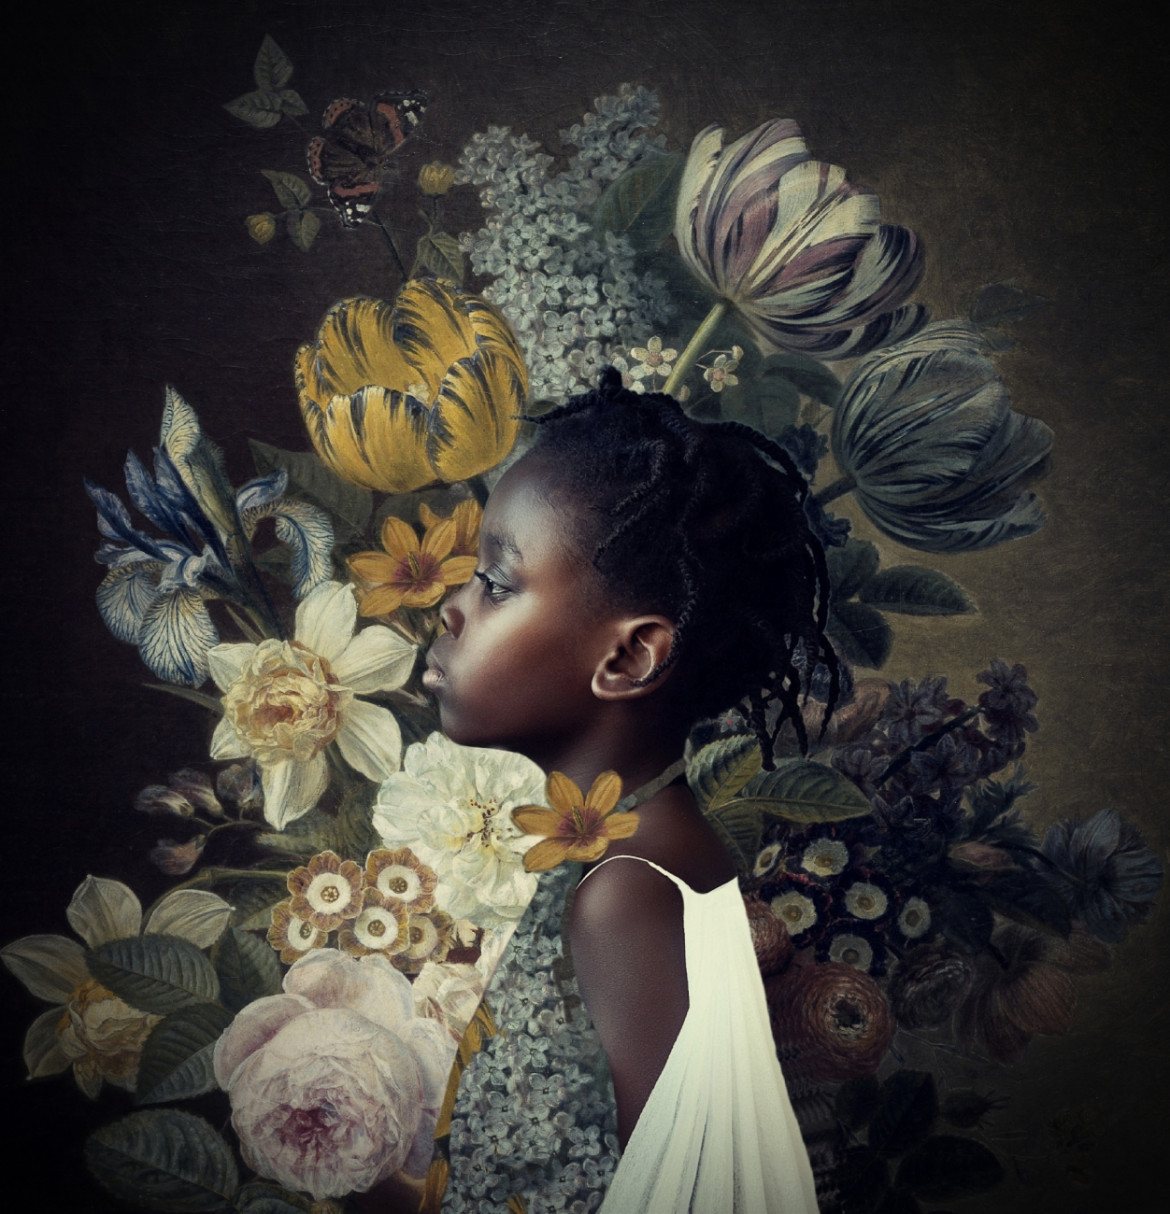 fot. Reiny Bourgonje, "African Flower", 2. miejsce w kat. Portraiture / Siena Creative Photo Awards 2021